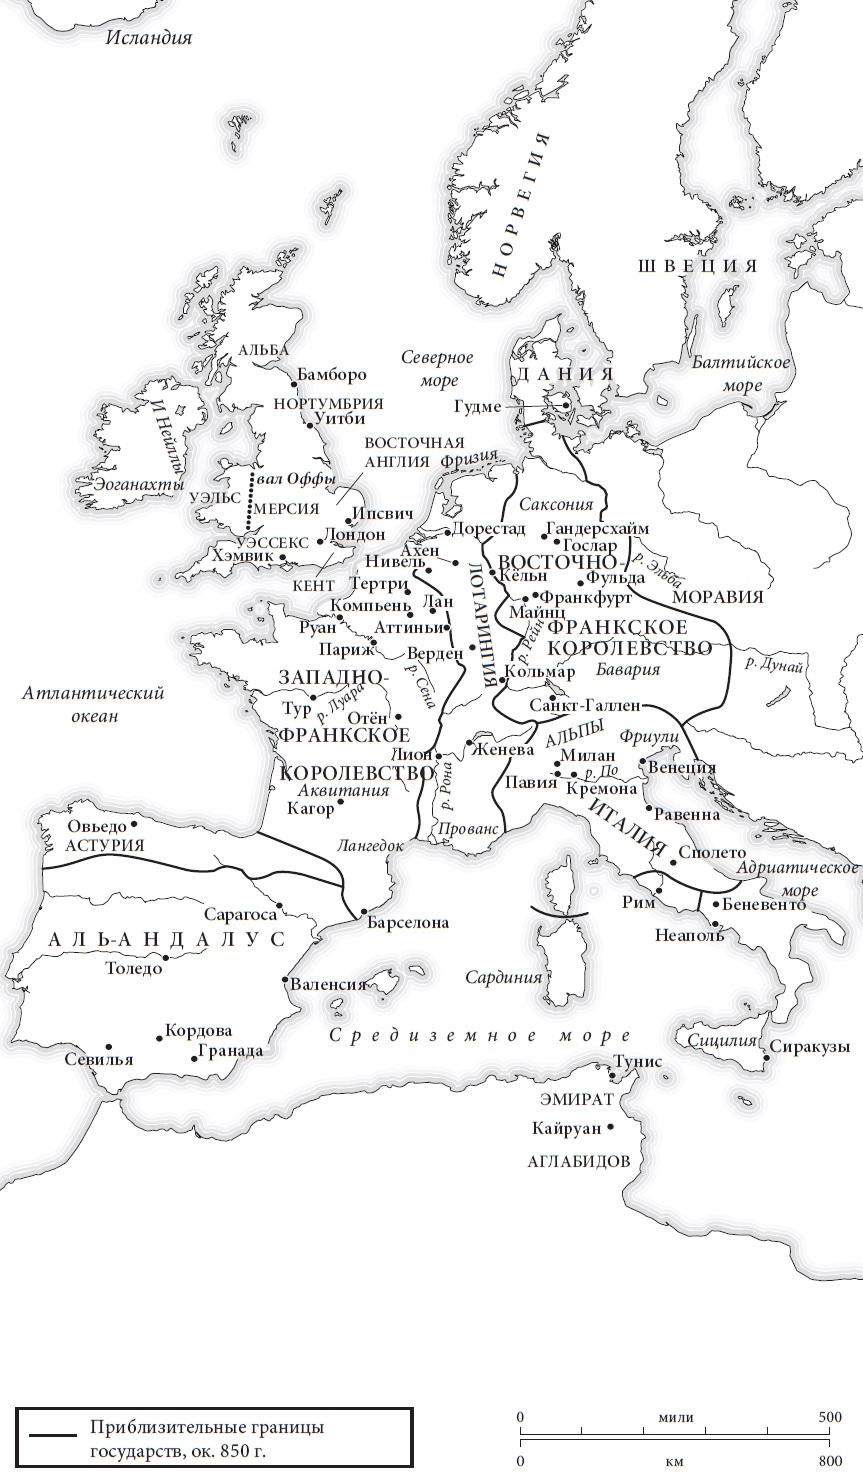 Ris. 3. Zapadnaya Evropa v 850 g